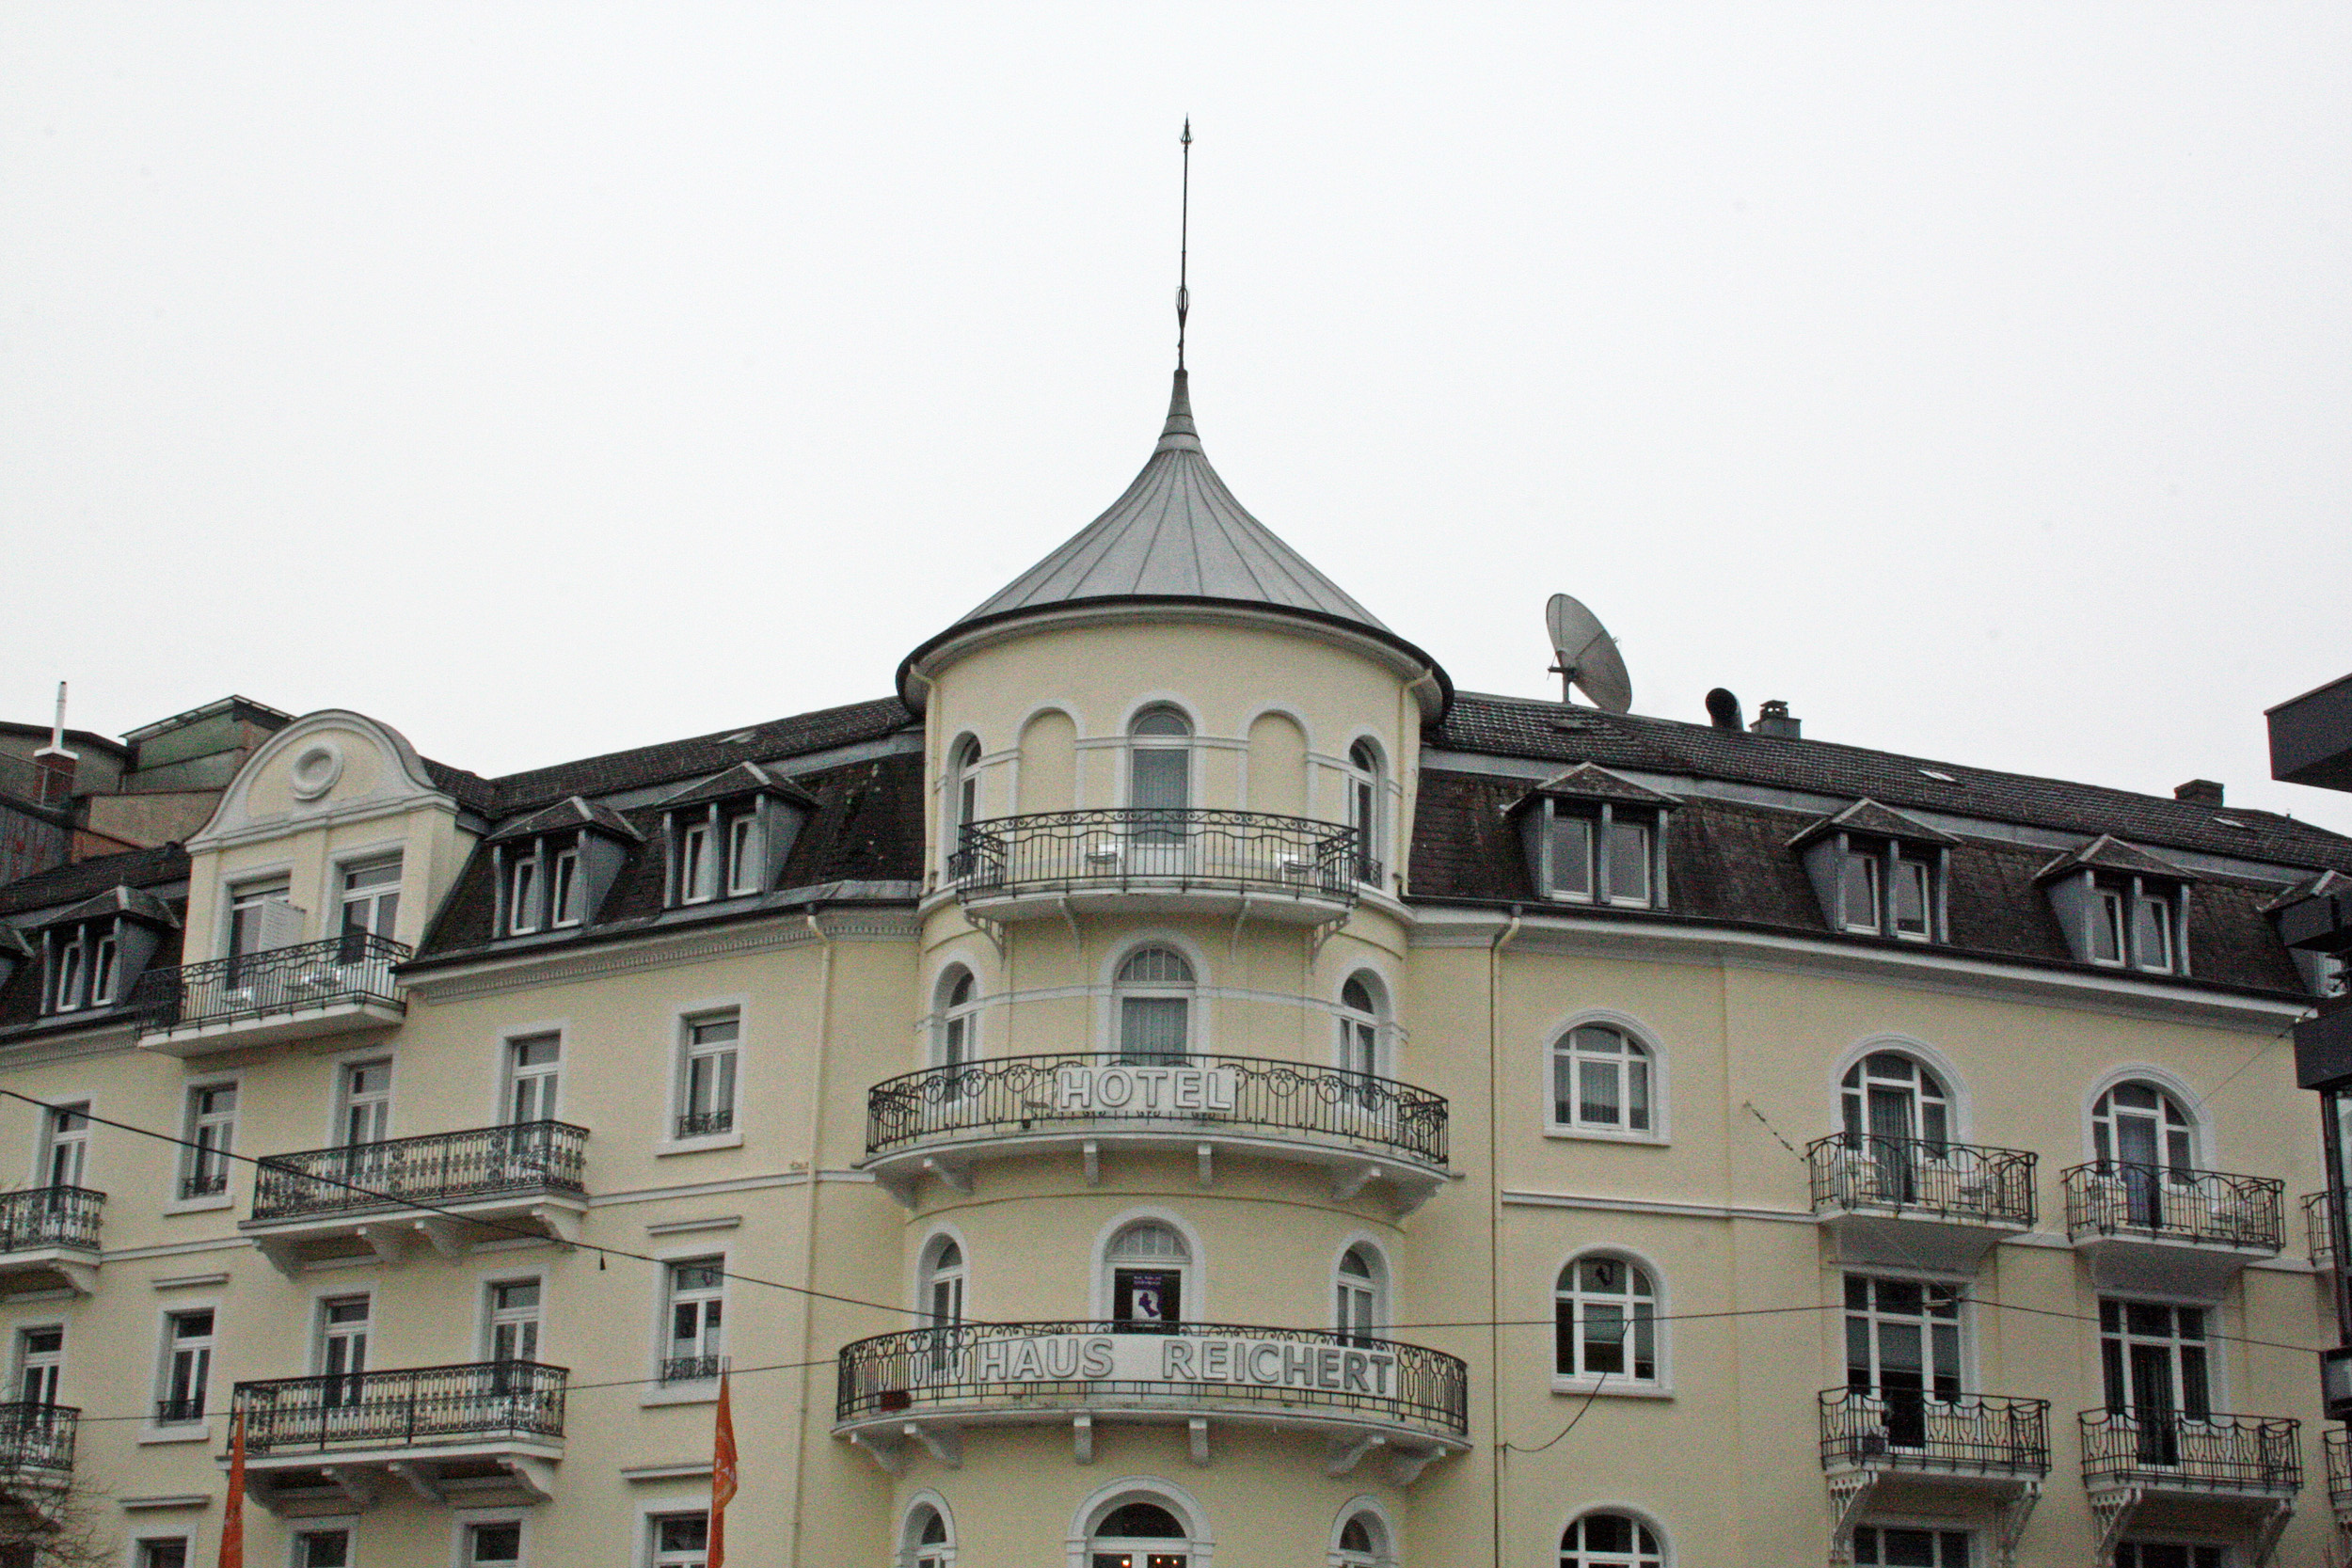 Hotel Haus Reichert, Baden-Baden.
